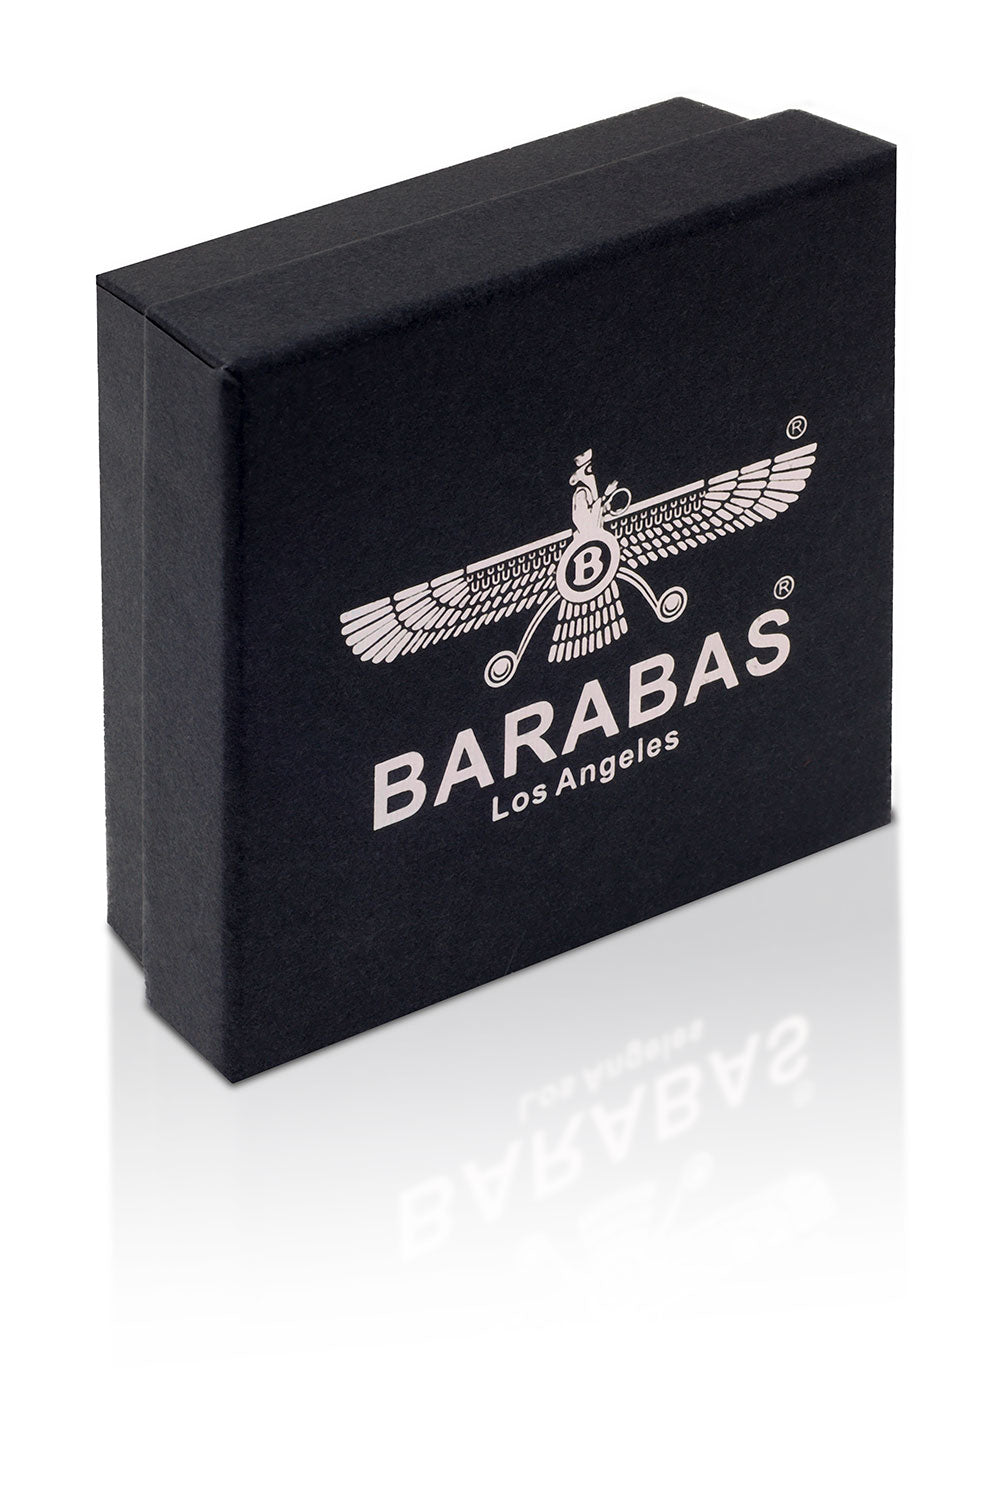 Barabas Unisex Multi-Layer Leather Rope Bangle Bracelets 4BMS12 Black